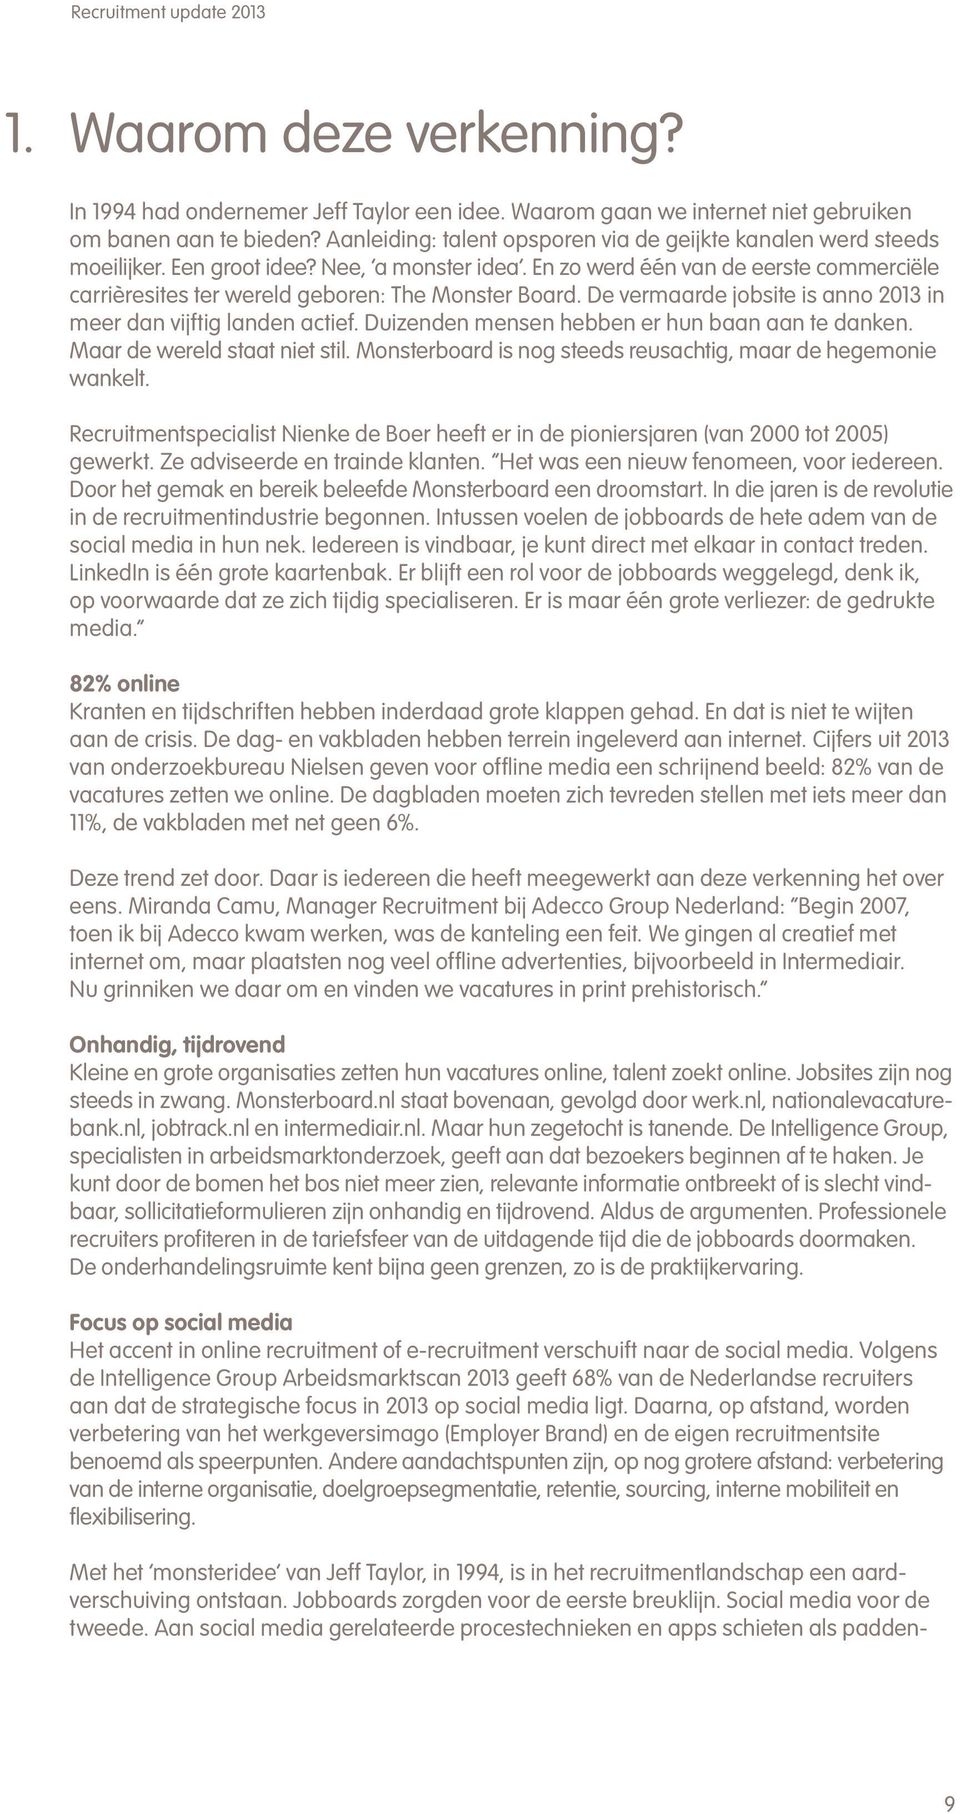 Recruitment update Ervaringen, gezichtspunten en perspectieven uit de  actuele HR-werkpraktijk. Een uitgave van Adecco Group Nederland - PDF  Gratis download